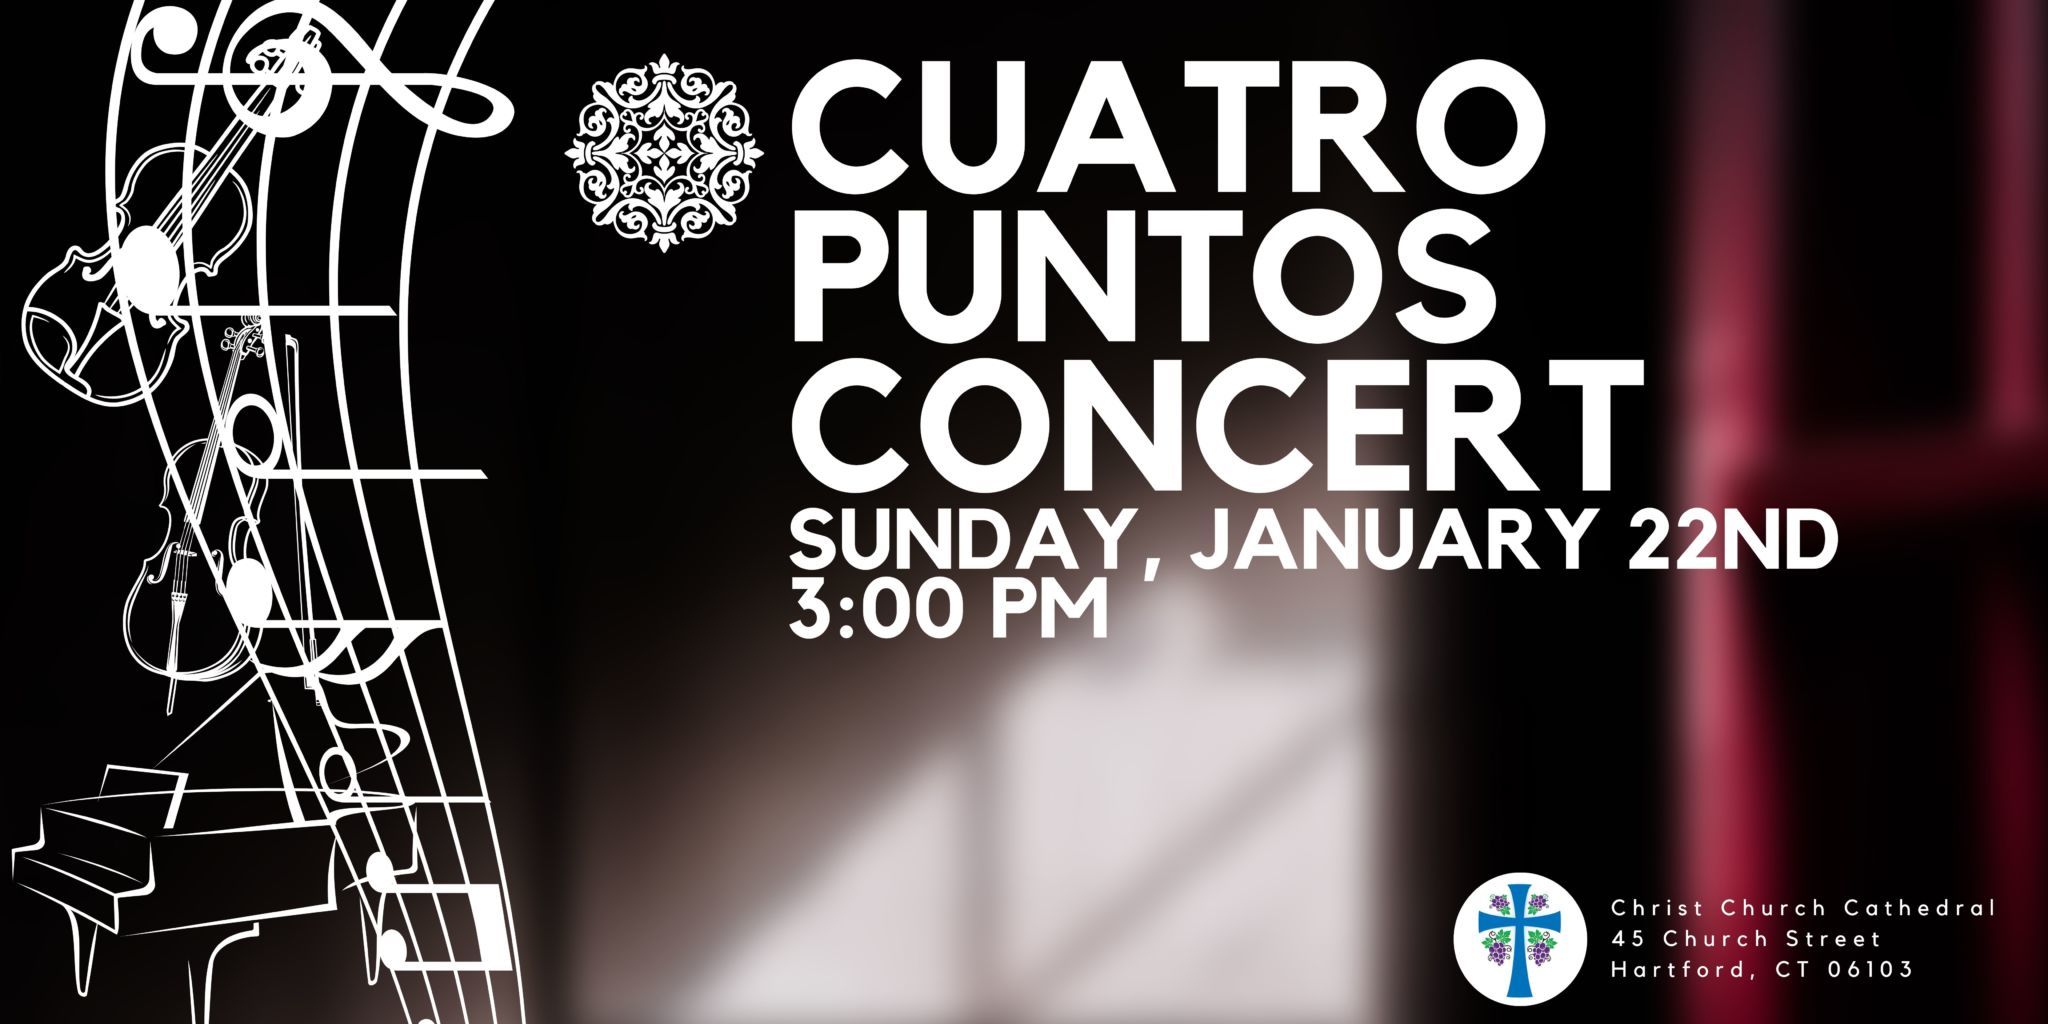 Cuatro Puntos Concert @ Our Cathedral